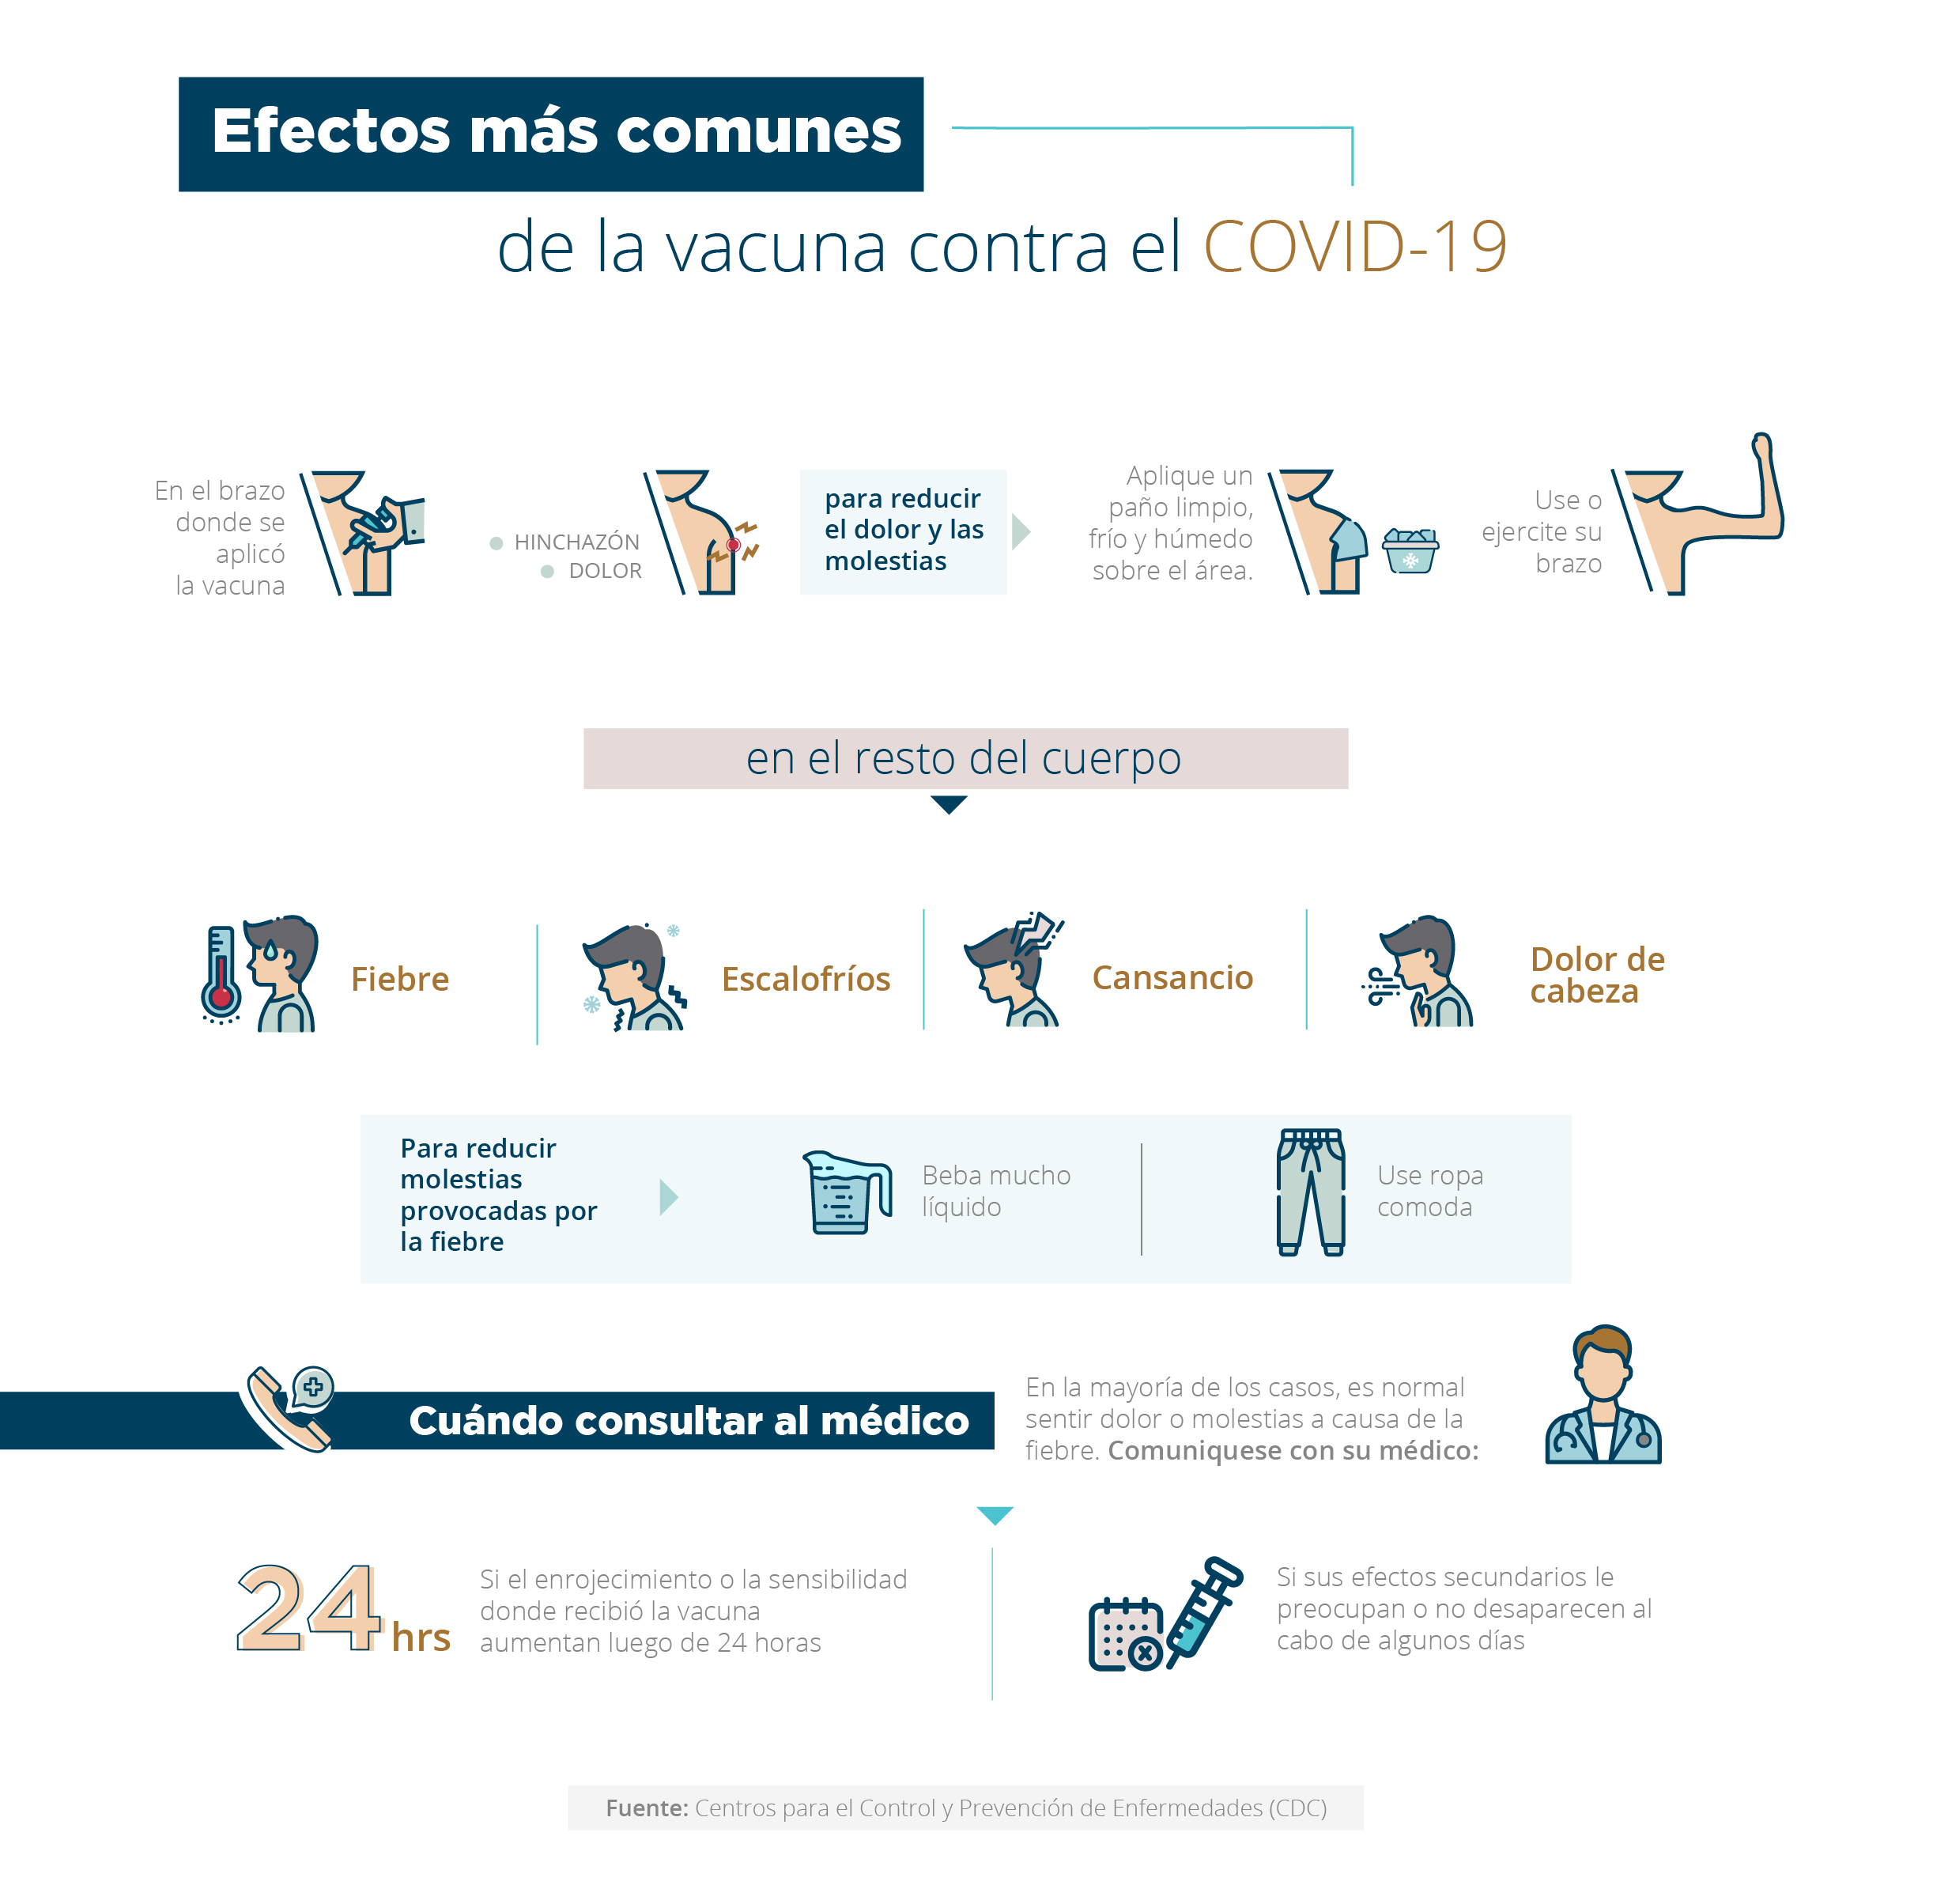 Effectos mas comunes de la vacuna de COVID-19